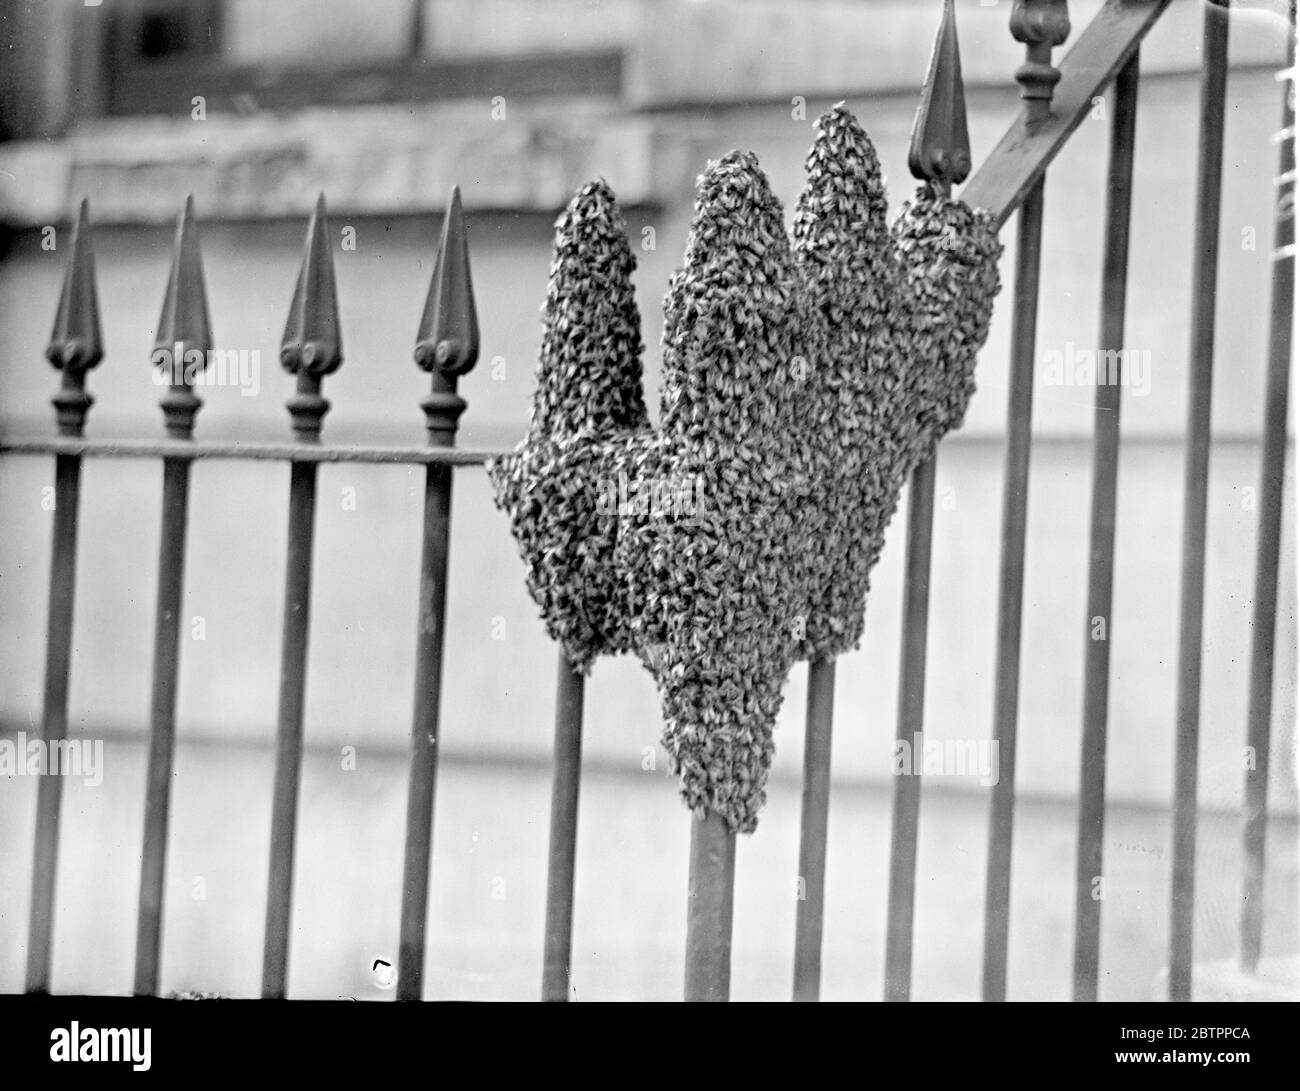 La mano della natura, Swame di api si stabilisce in London Street. L'effetto curioso quasi a forma di mano umana, dato da sciame di api, che si stabilì sulle ringhiere di una casa in via Raffaello, Knightsbridge. Lo sciame rimase sulle ringhiere per diverse ore fino a quando il signor T King, della divisione Wimbledon dell' Associazione apicoltori, tentò di salvarle e di rimuoverle. 3 agosto 1938 Foto Stock